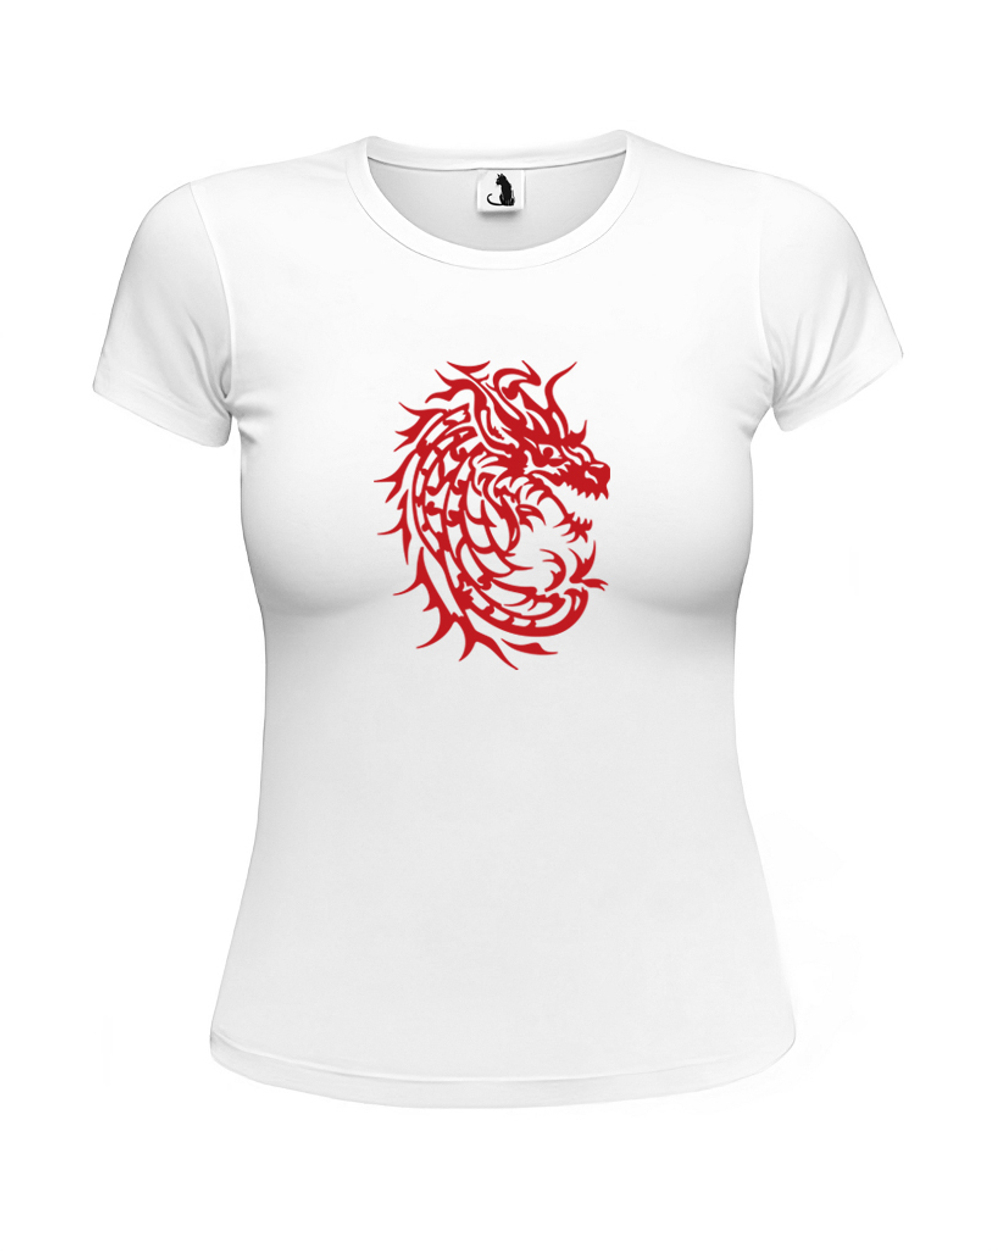 Футболка c драконом женская приталенная белая с красным рисунком